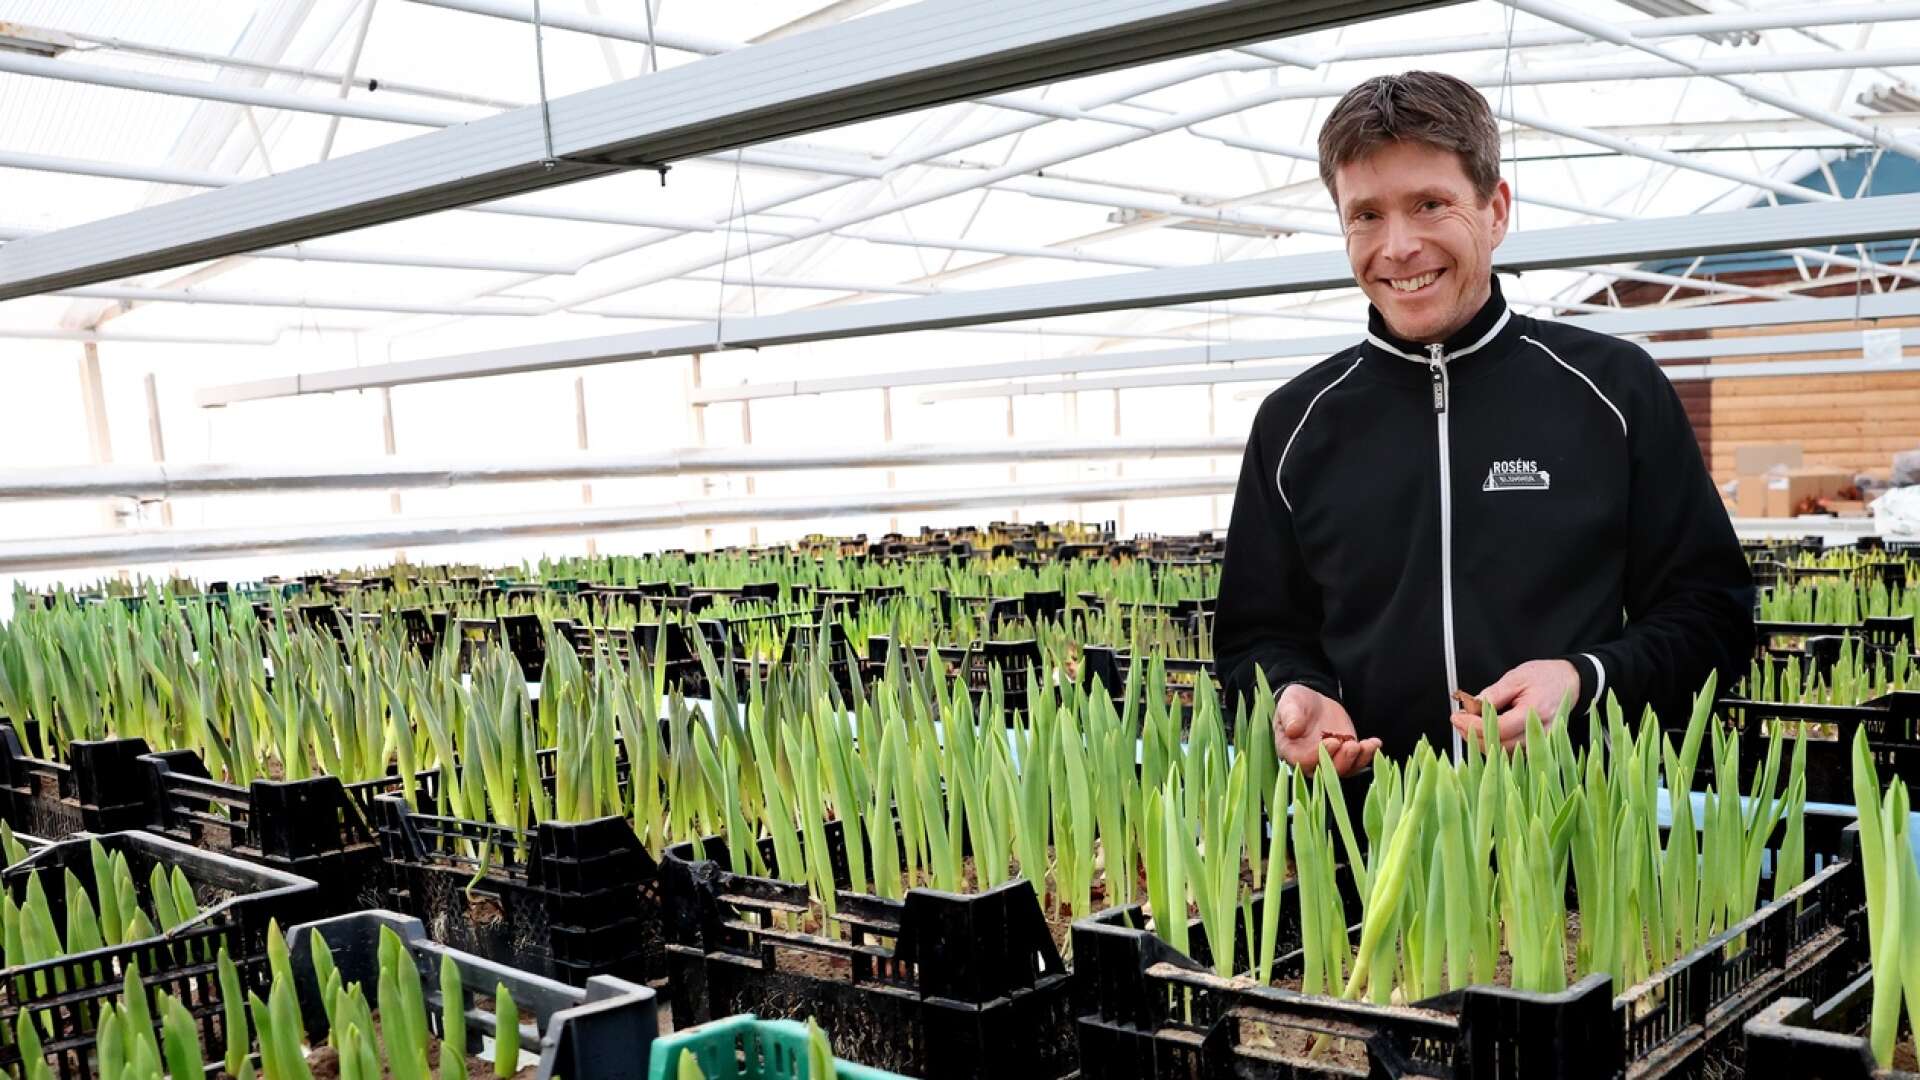 Roséns Blommor i Vara har drivit upp egna tulpaner i många år. ”Det är ingen bra affär rent ekonomiskt, men det är roligt att odla”, säger Niklas Rosén.